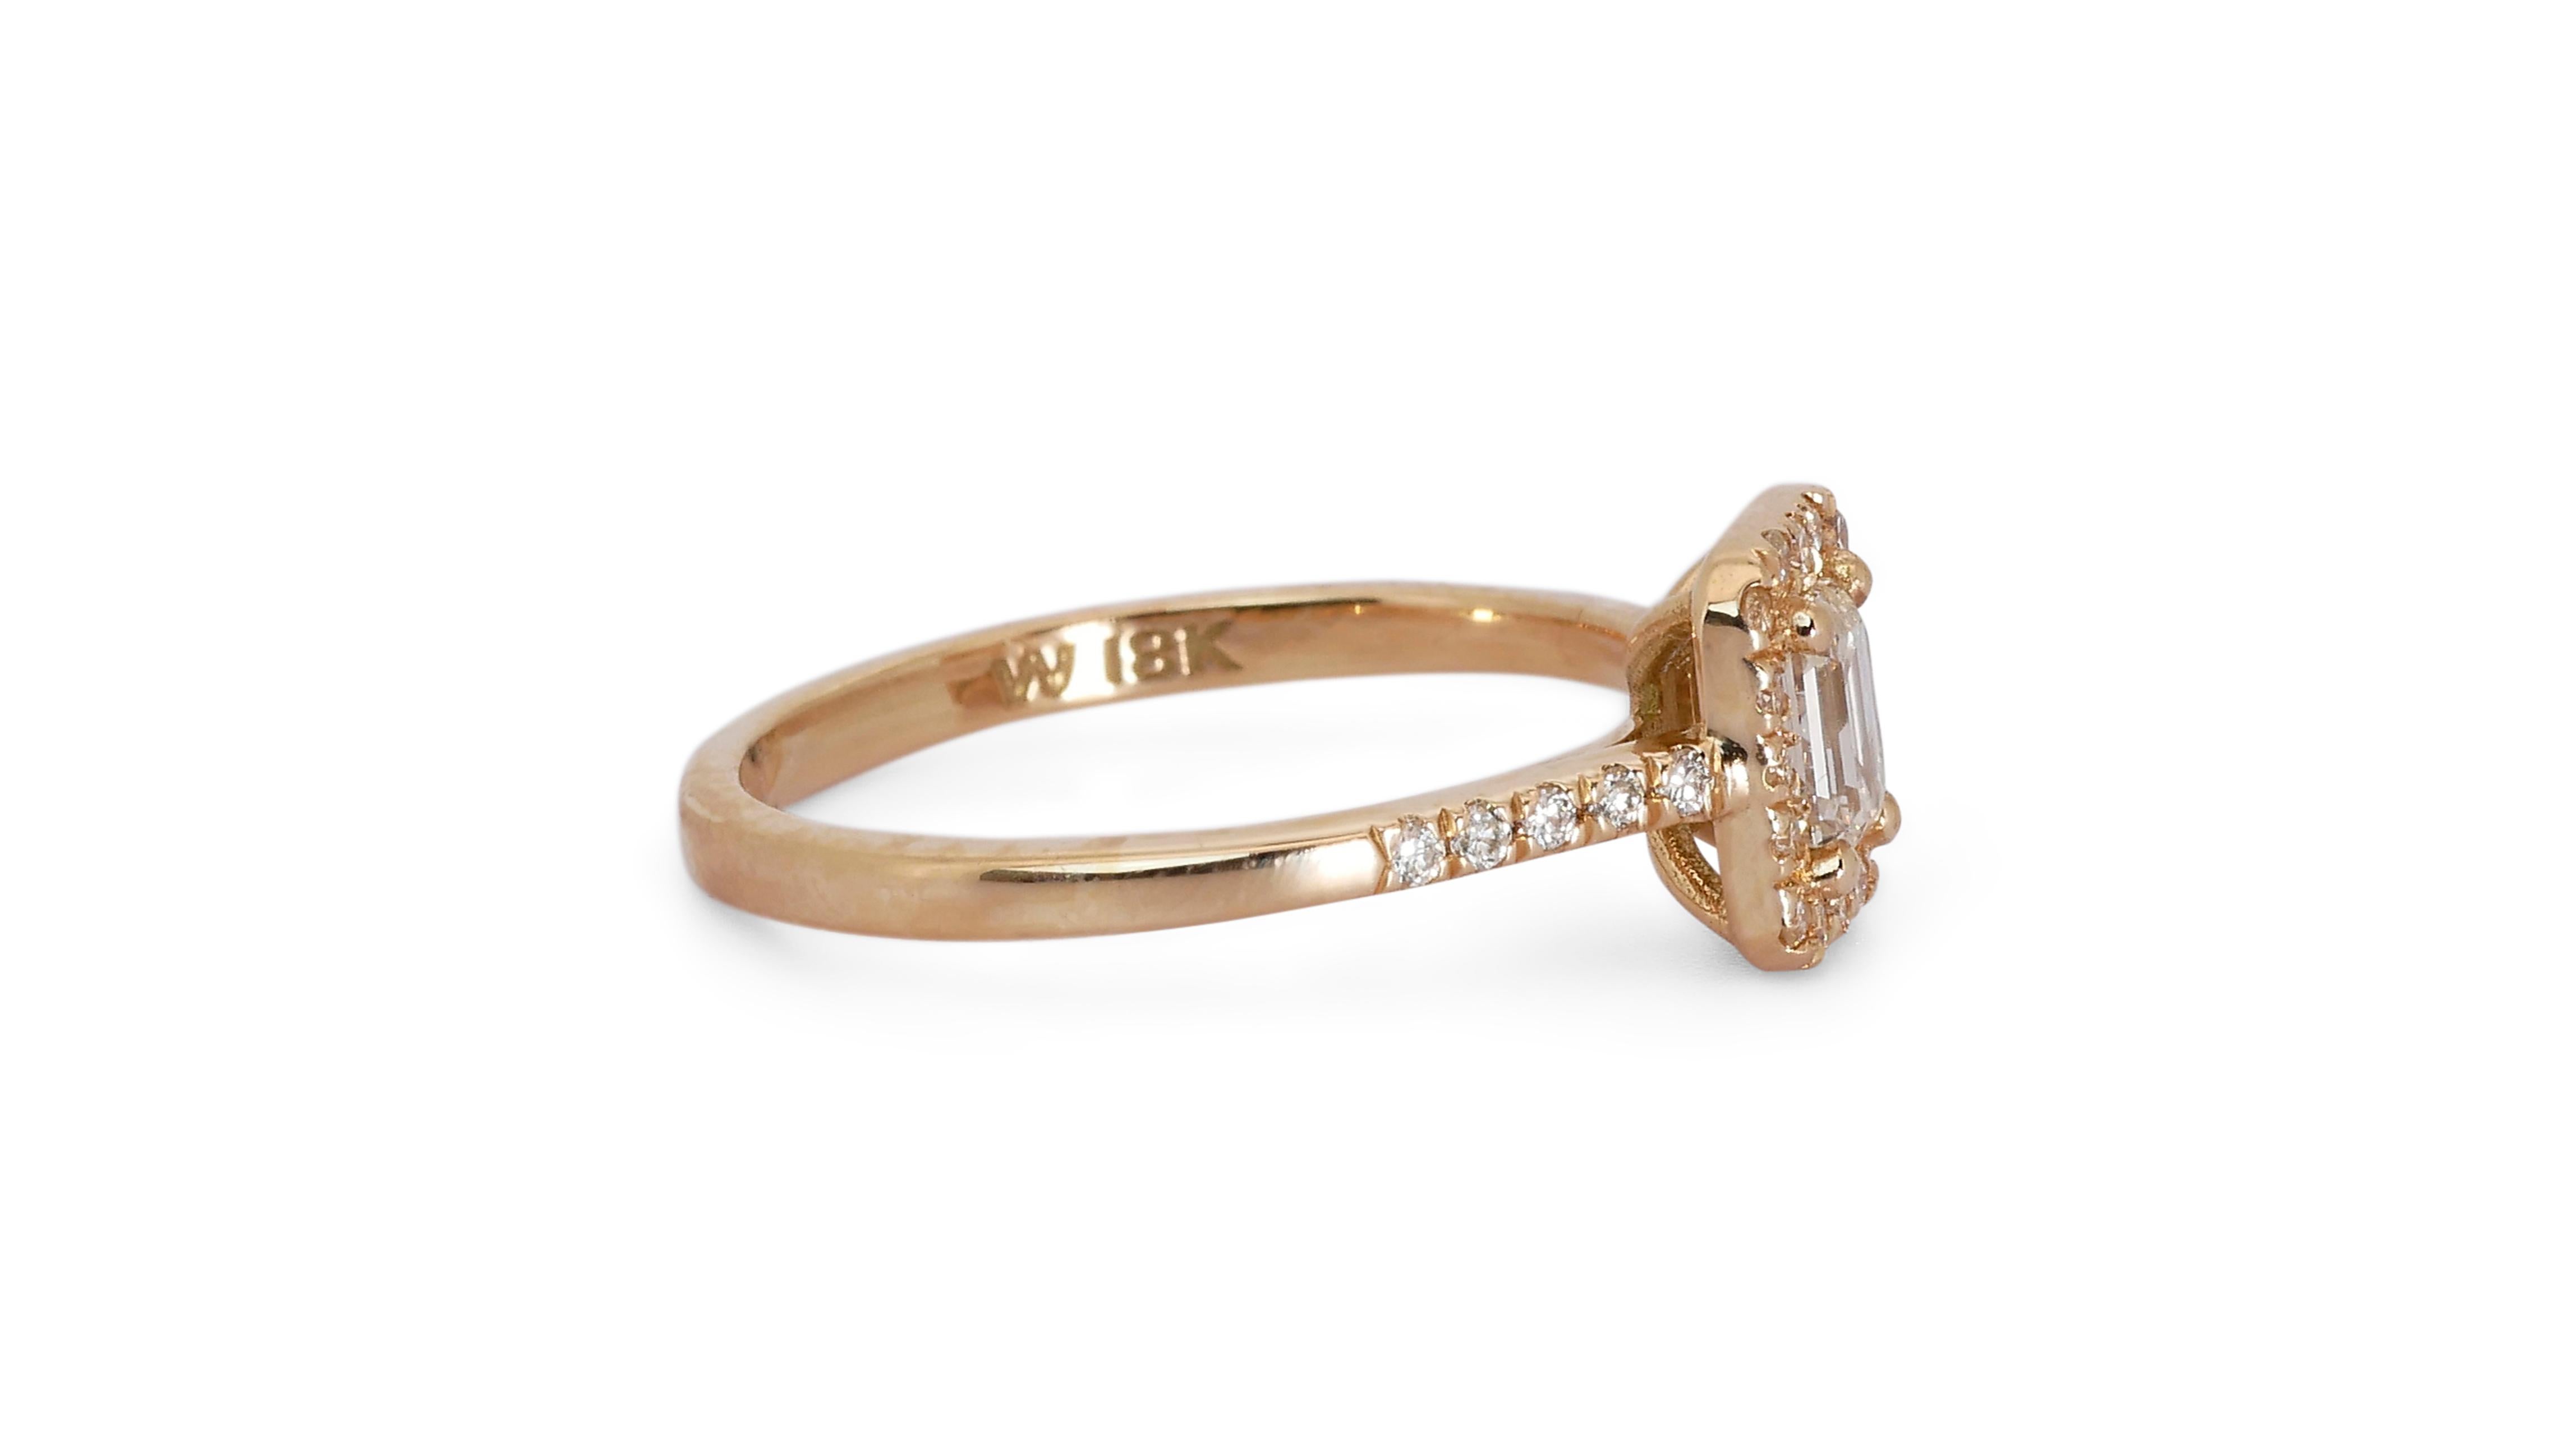 Ravishing 18k Rose Gold Halo Ring w/ 0.84 Carat Natural Diamonds IGI Cert For Sale 2